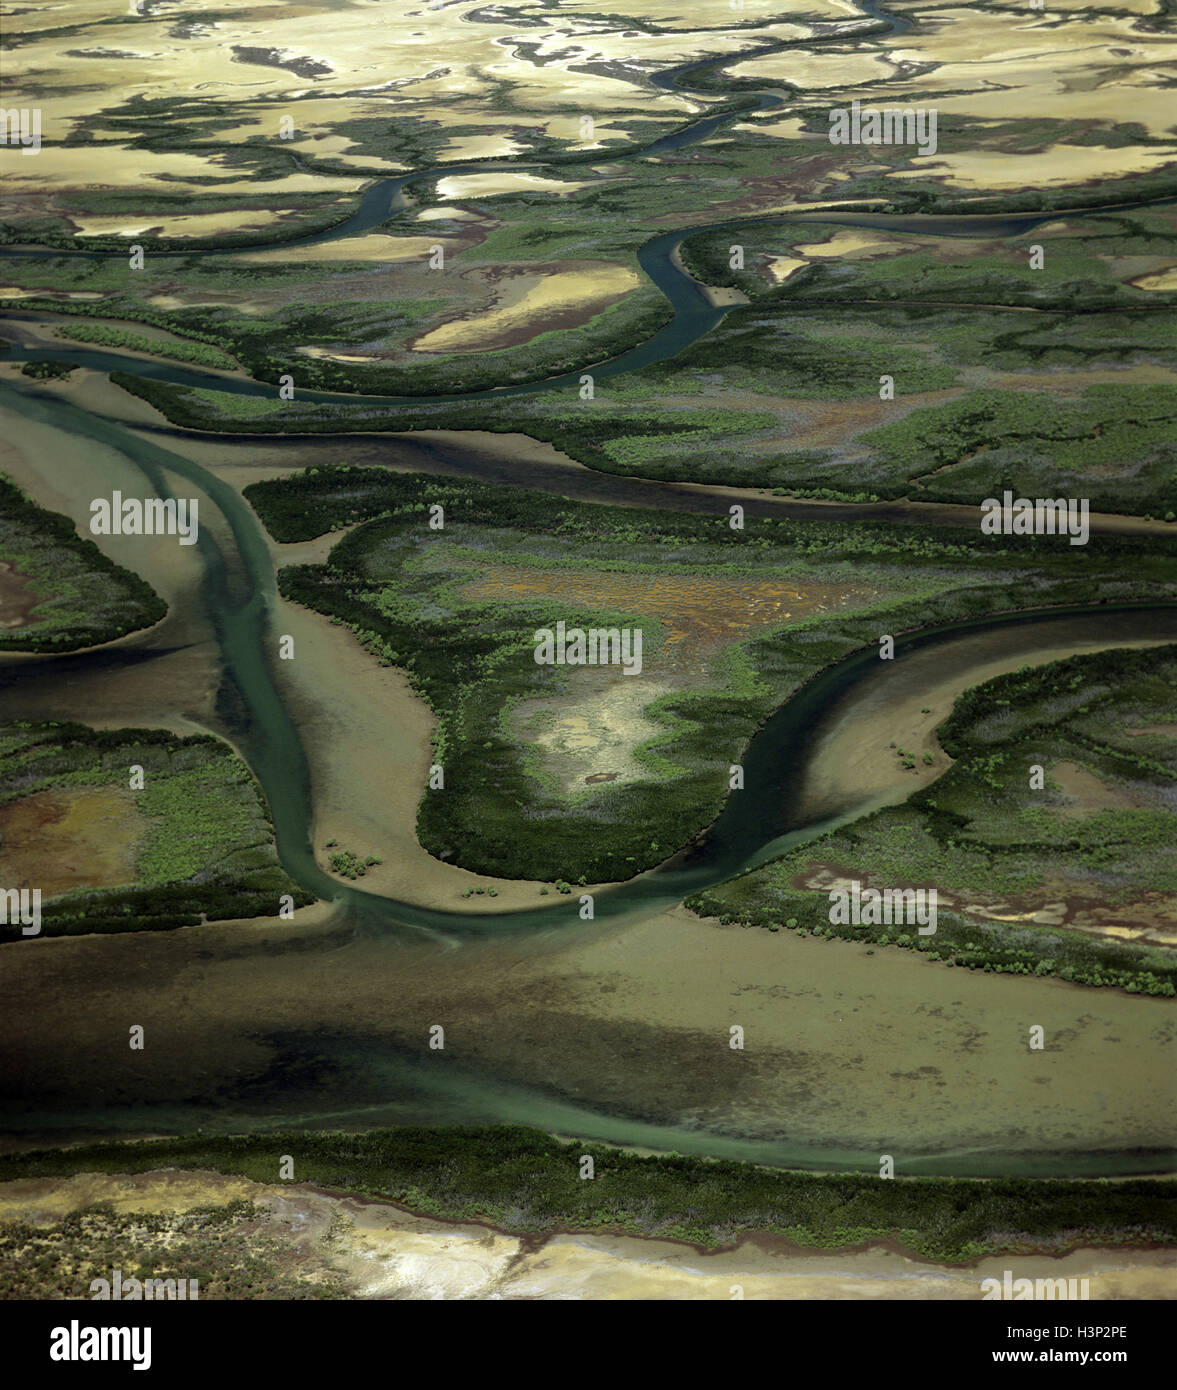 McArthur River vicino al suo delta, Foto Stock